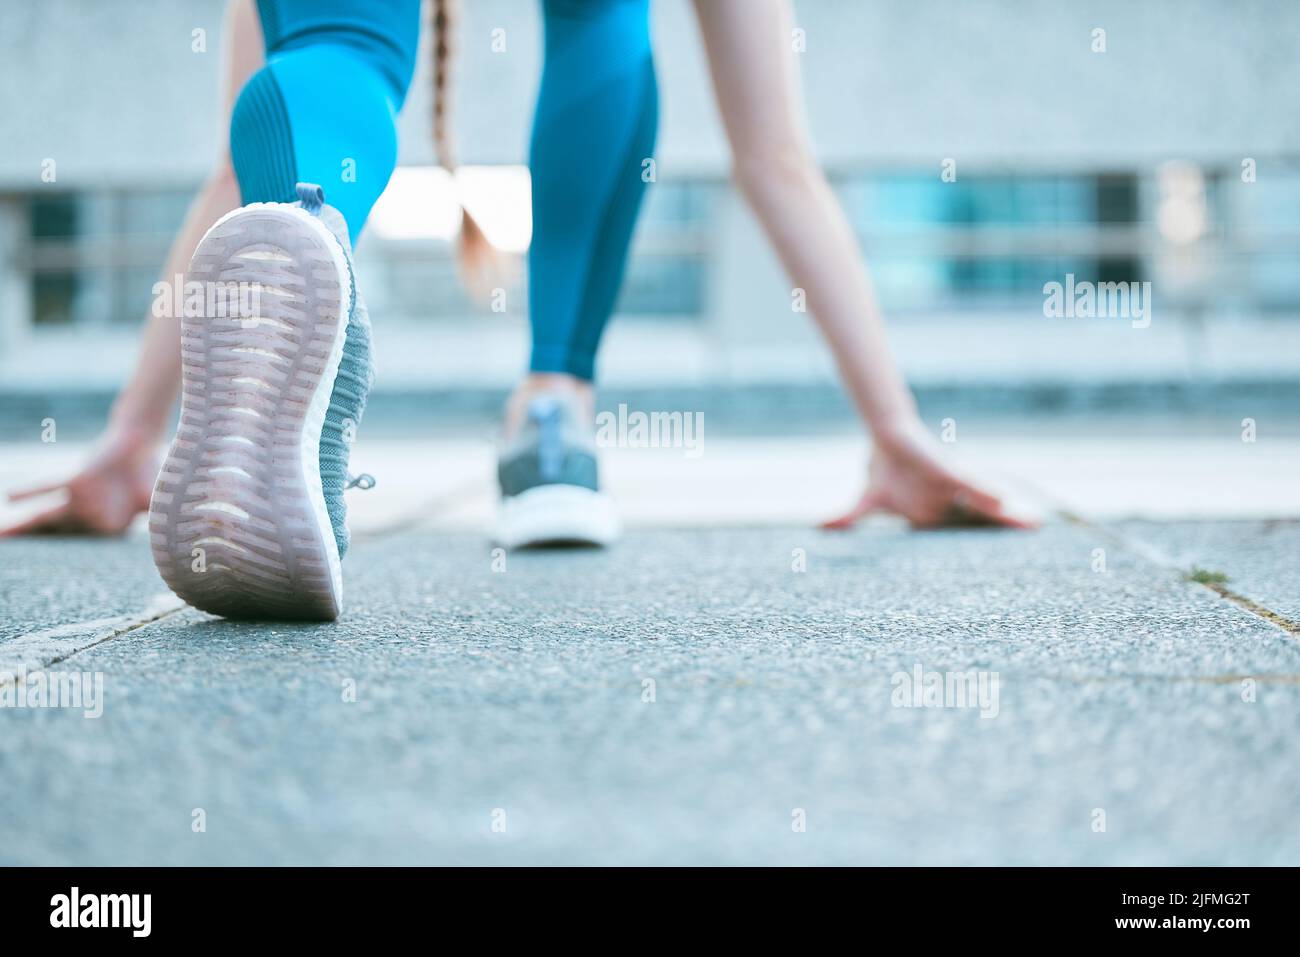 Gros plan de la semelle de chaussures d'une athlète féminine se préparant à courir en position de départ tout en s'exerçant à l'extérieur. Femme sportive portant des chaussures Banque D'Images